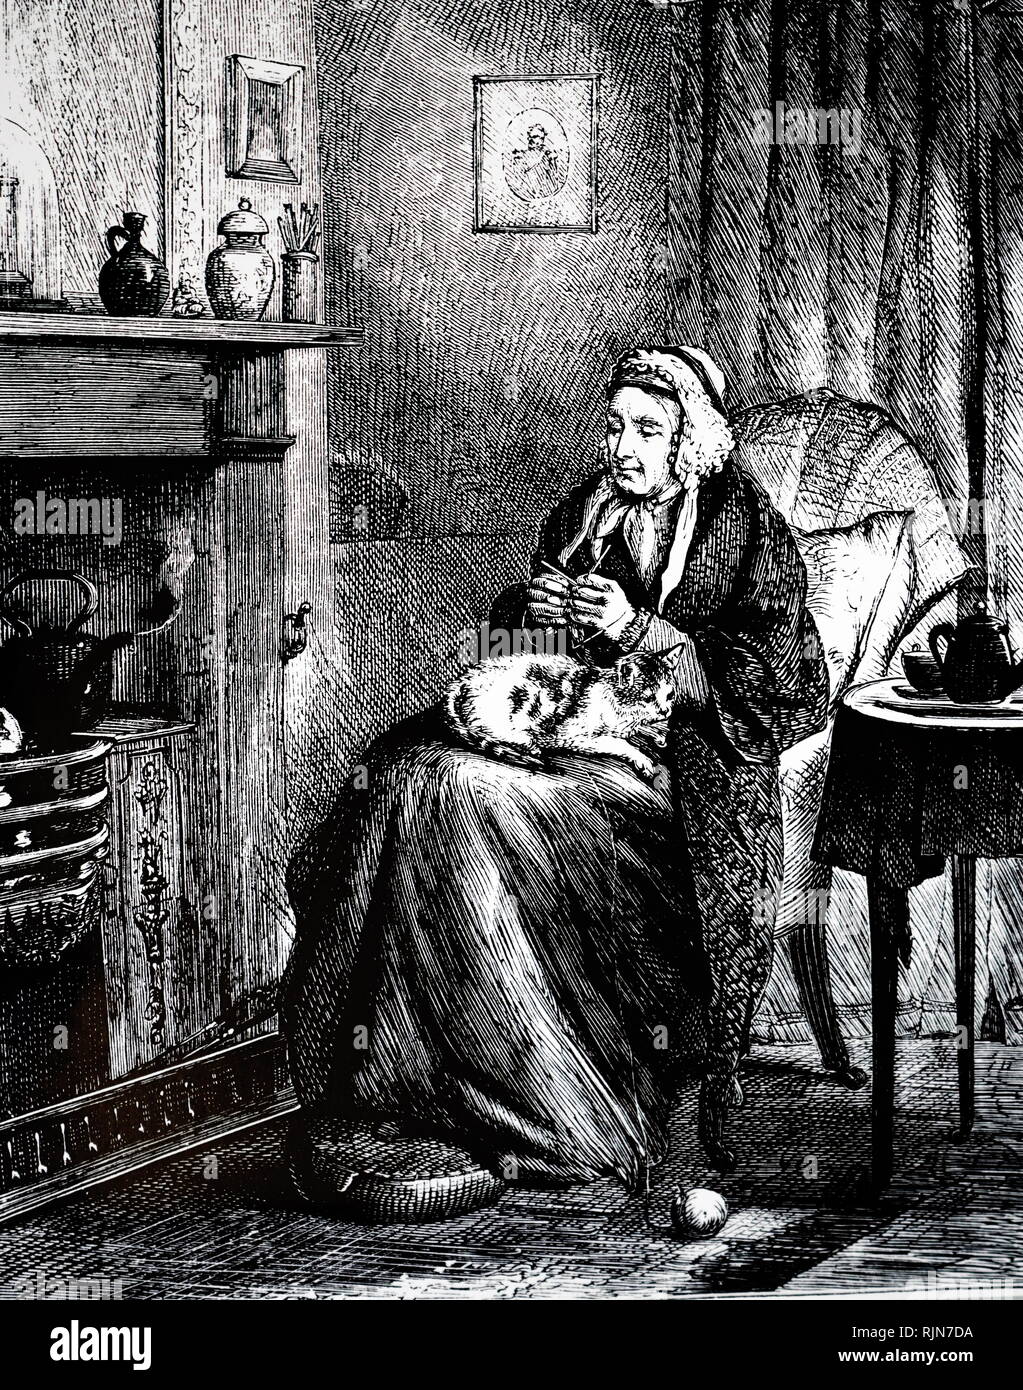 Abbildung: zwei Frauen neben einem Feuer sitzen. Abbildung von Francis Arthur Fraser, 1876 Stockfoto